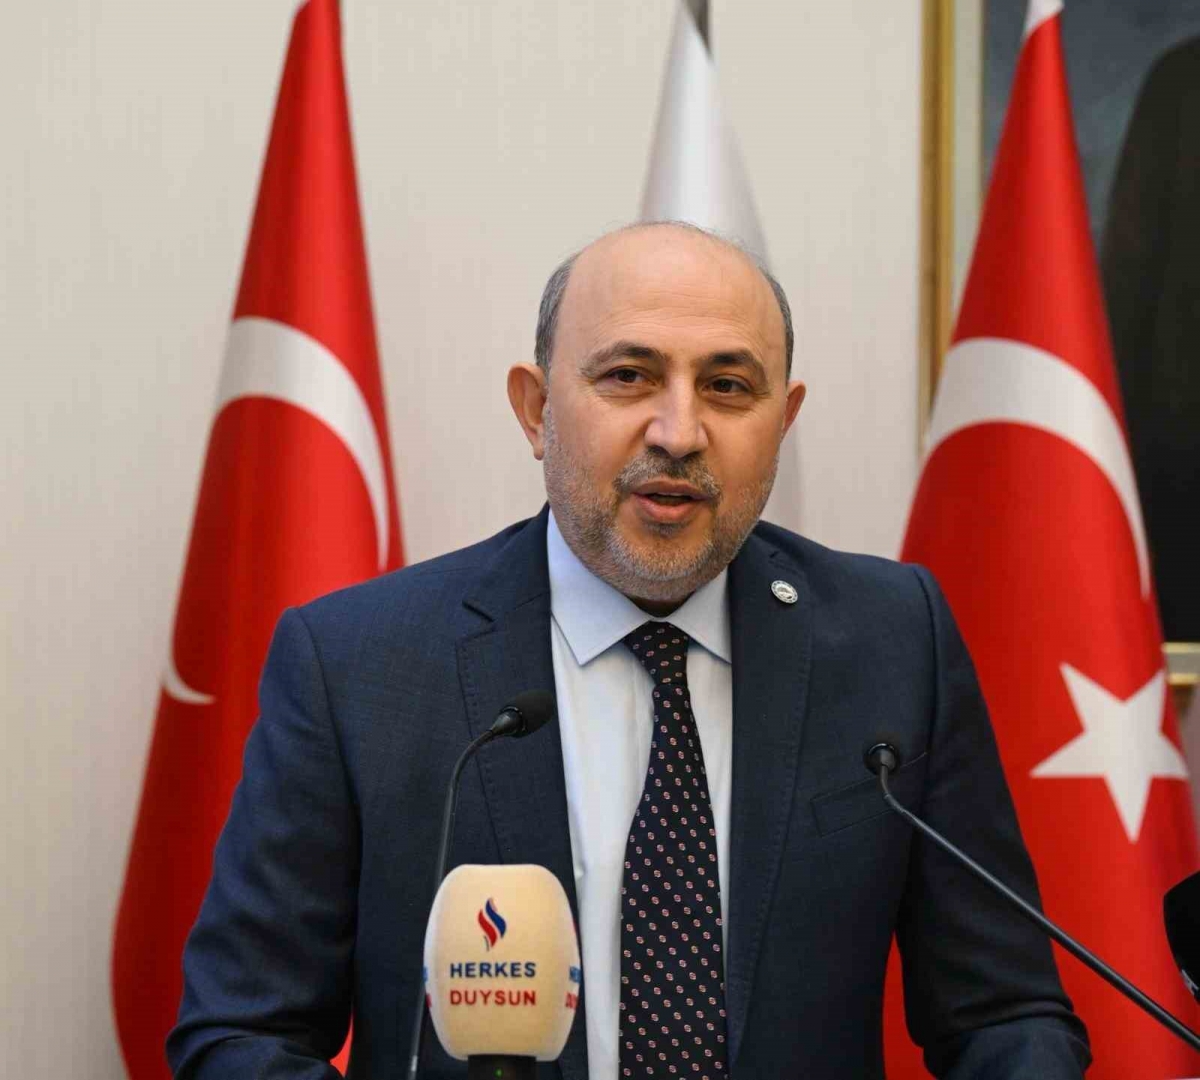 AFSİAD Bursa Başkanı Duran: “Ankara’ya 10 yeni OSB hedefi Bursa için örnek olmalı″